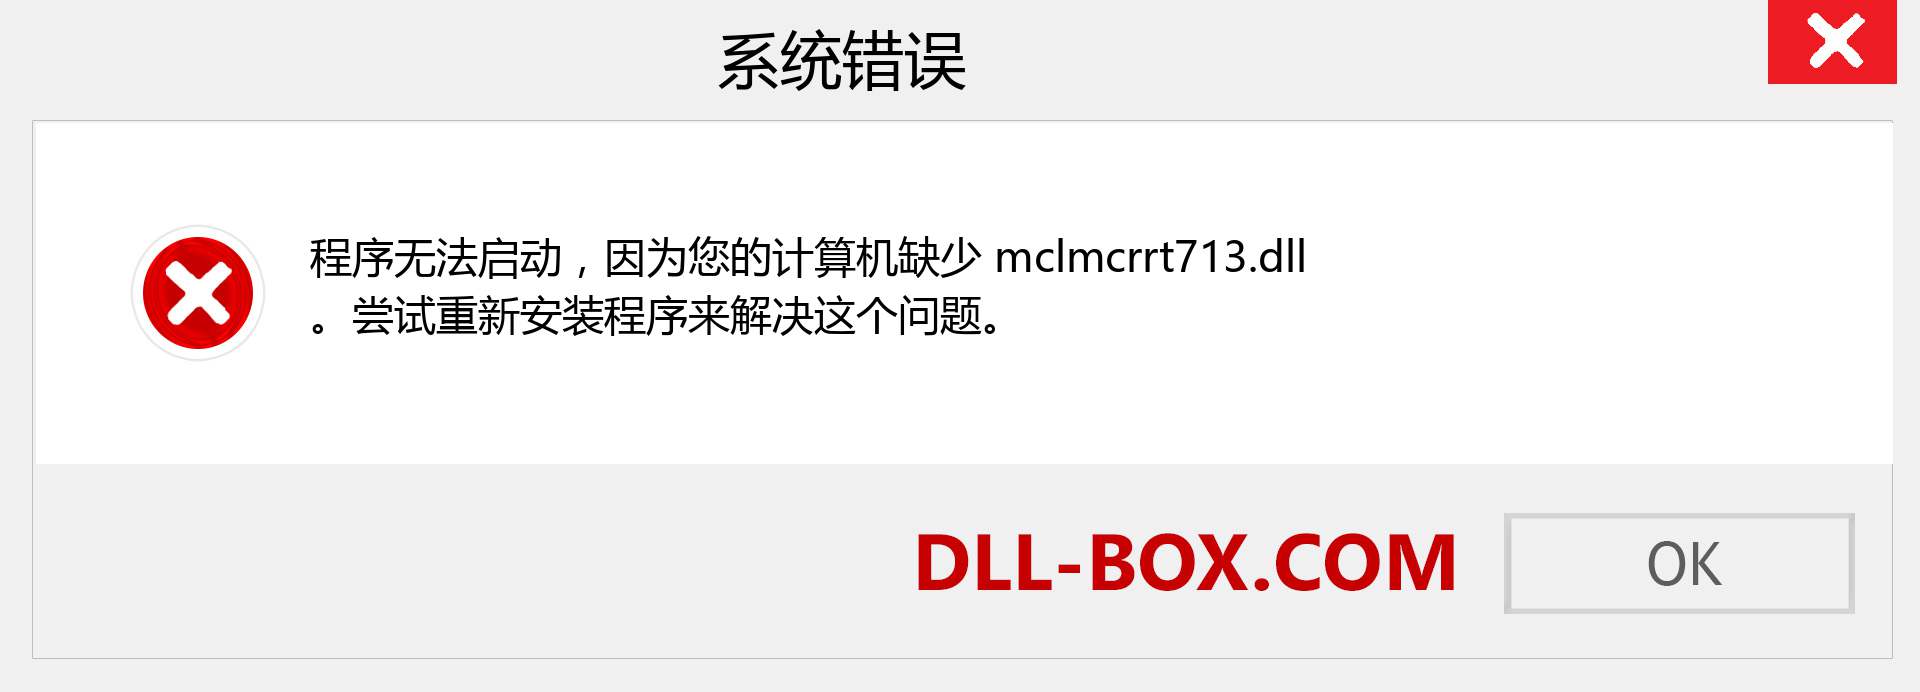 mclmcrrt713.dll 文件丢失？。 适用于 Windows 7、8、10 的下载 - 修复 Windows、照片、图像上的 mclmcrrt713 dll 丢失错误